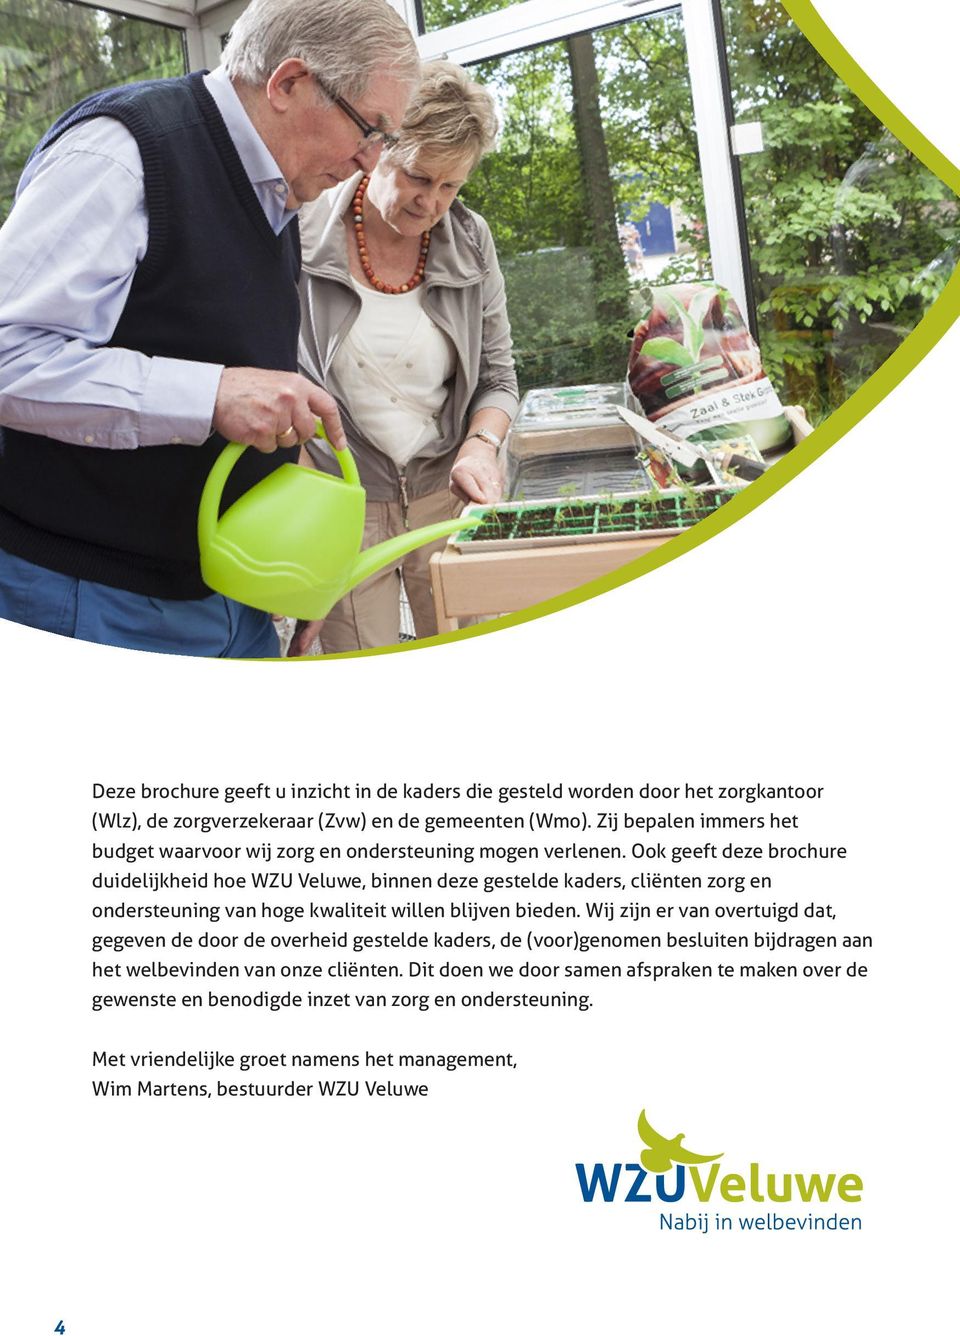 Ook geeft deze brochure duidelijkheid hoe WZU Veluwe, binnen deze gestelde kaders, cliënten zorg en ondersteuning van hoge kwaliteit willen blijven bieden.